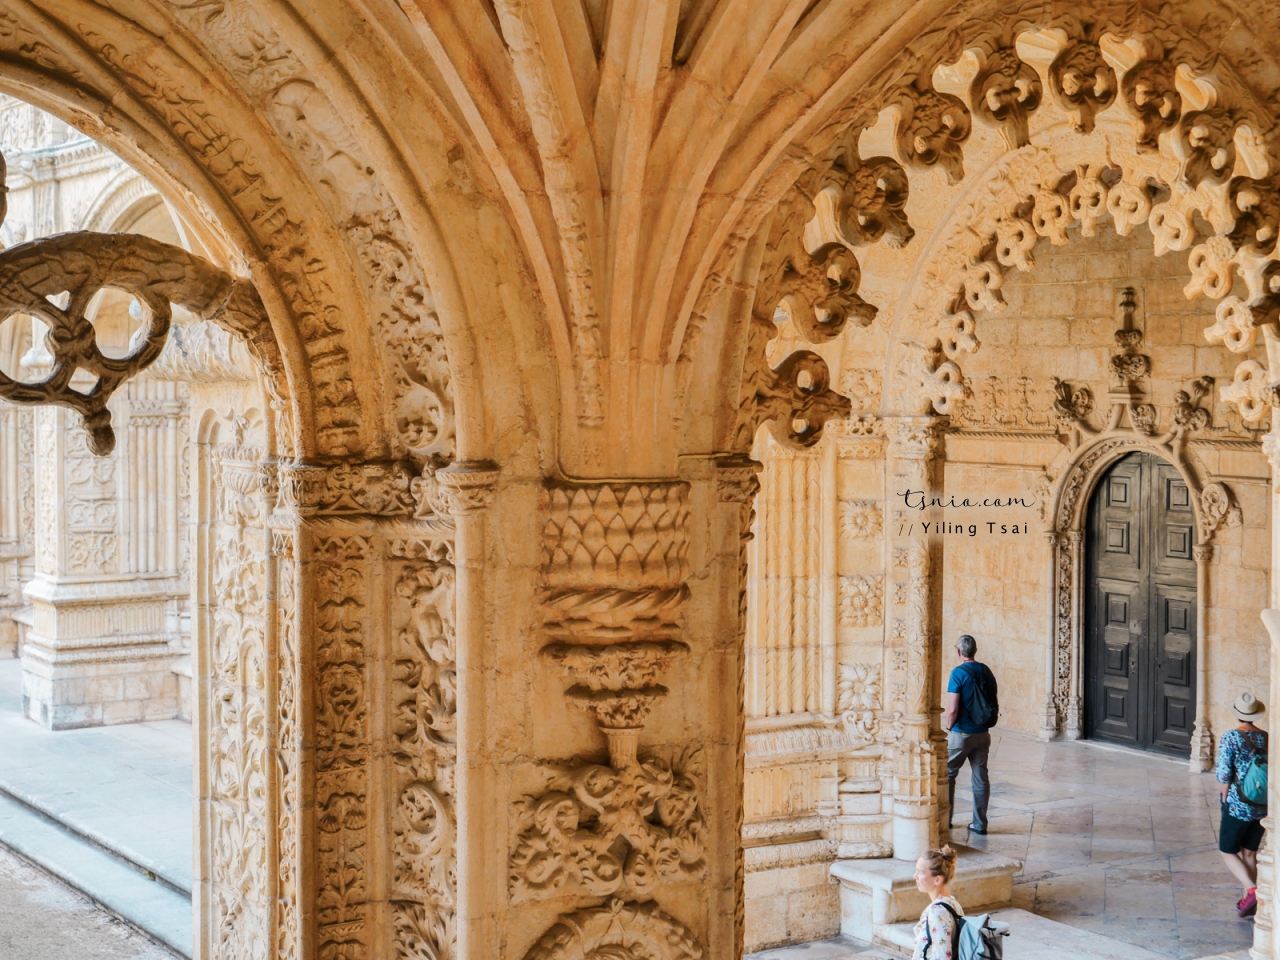 葡萄牙里斯本景點 Mosteiro dos Jerónimos 熱羅尼莫斯修道院 葡萄牙 16 世紀建築傑作